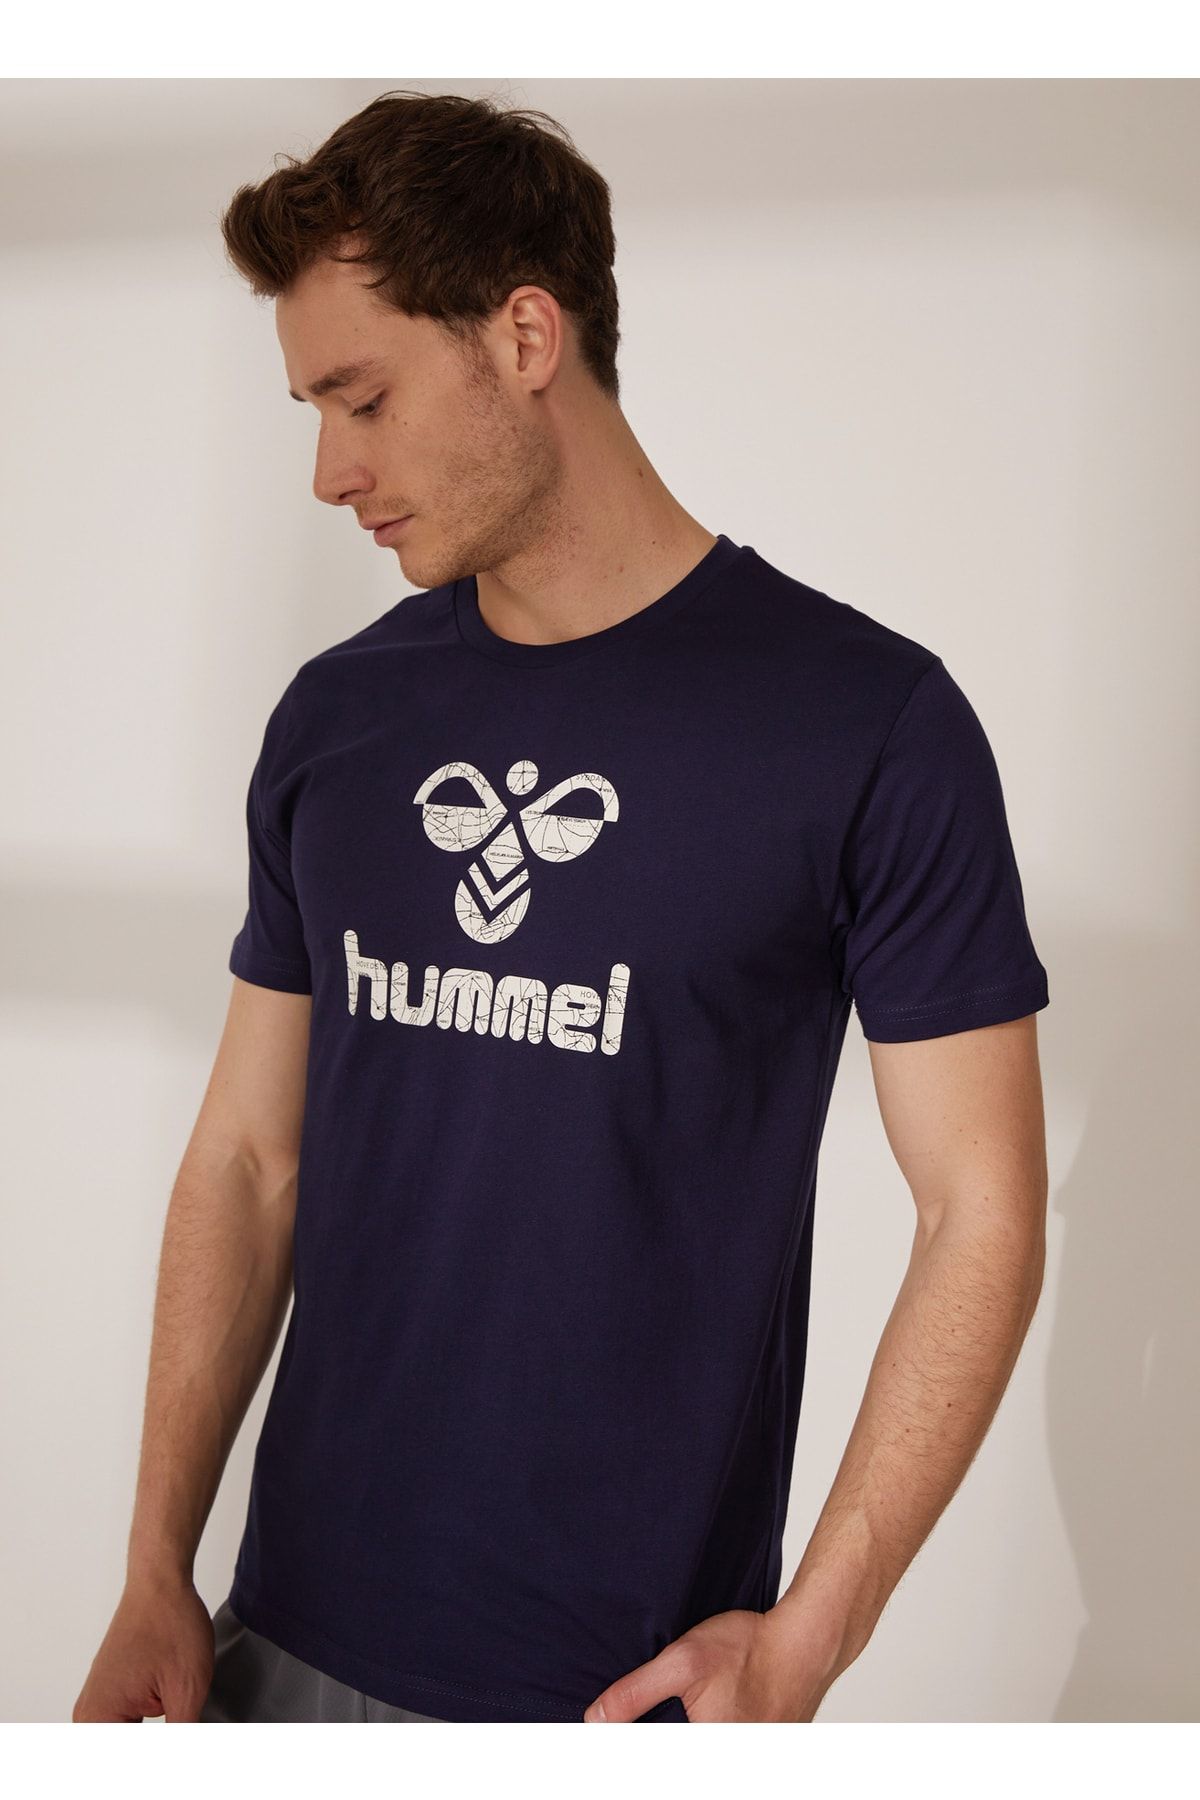 hummel Lacivert Erkek Yuvarlak Yaka T-shirt 910946-7480 Akıra T-shırt S/s Tee